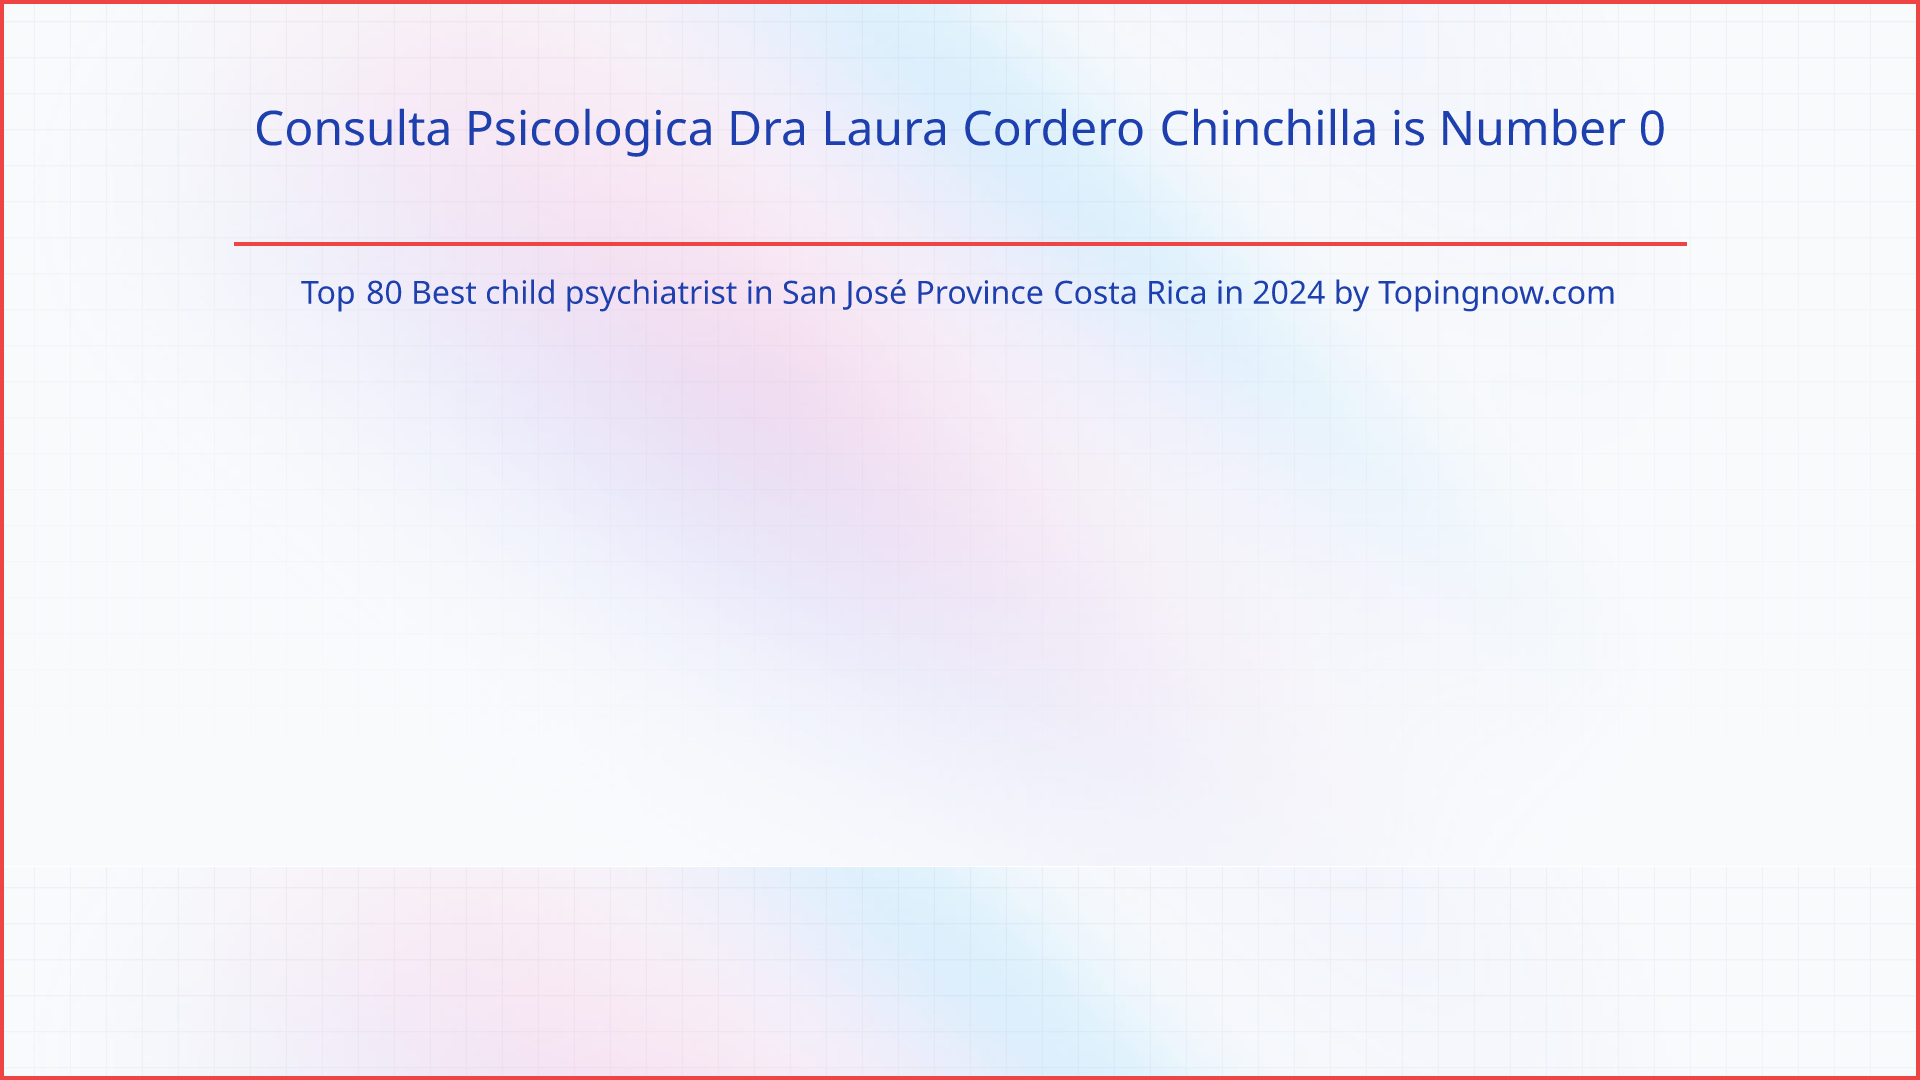 Consulta Psicologica Dra Laura Cordero Chinchilla: Top 80 Best child psychiatrist in San José Province Costa Rica in 2024